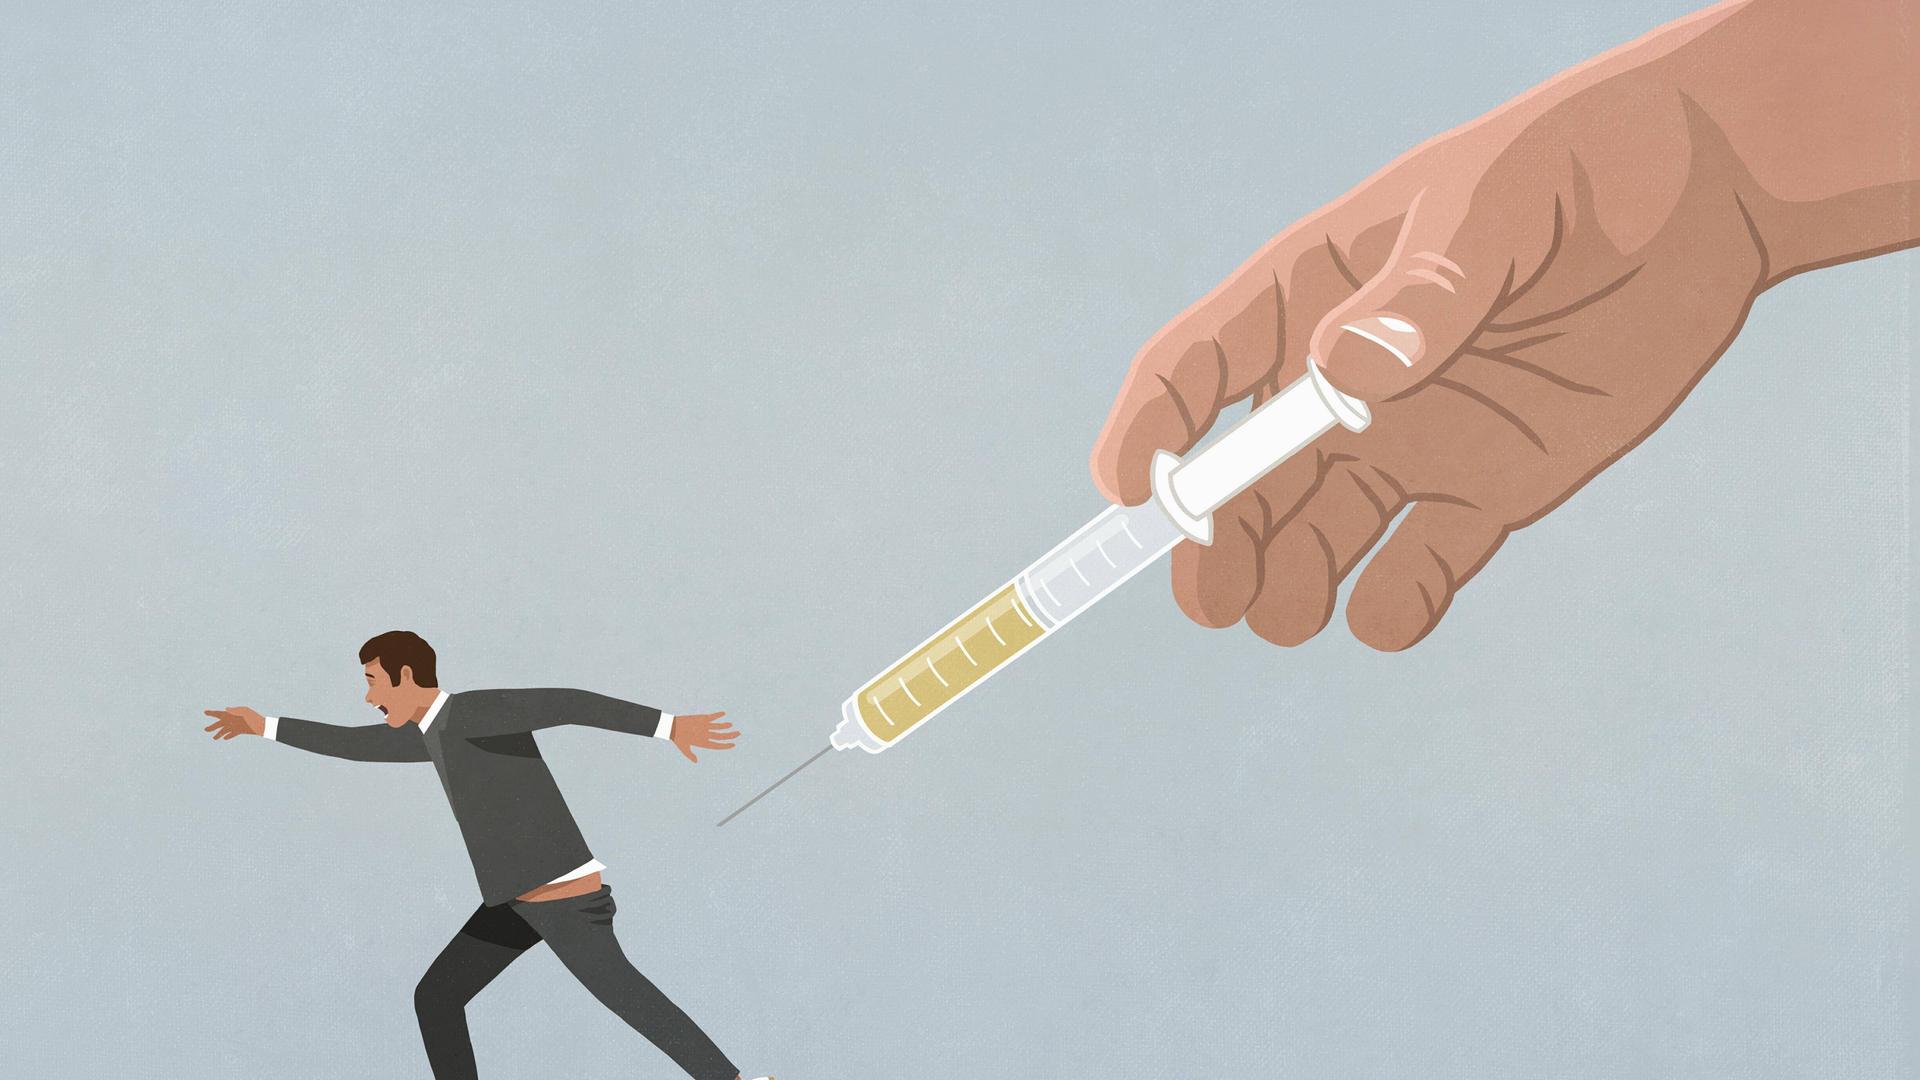 Illustration einer großen Hand mit Impfstoffspritze, die einen laufenden Mann verfolgt.
